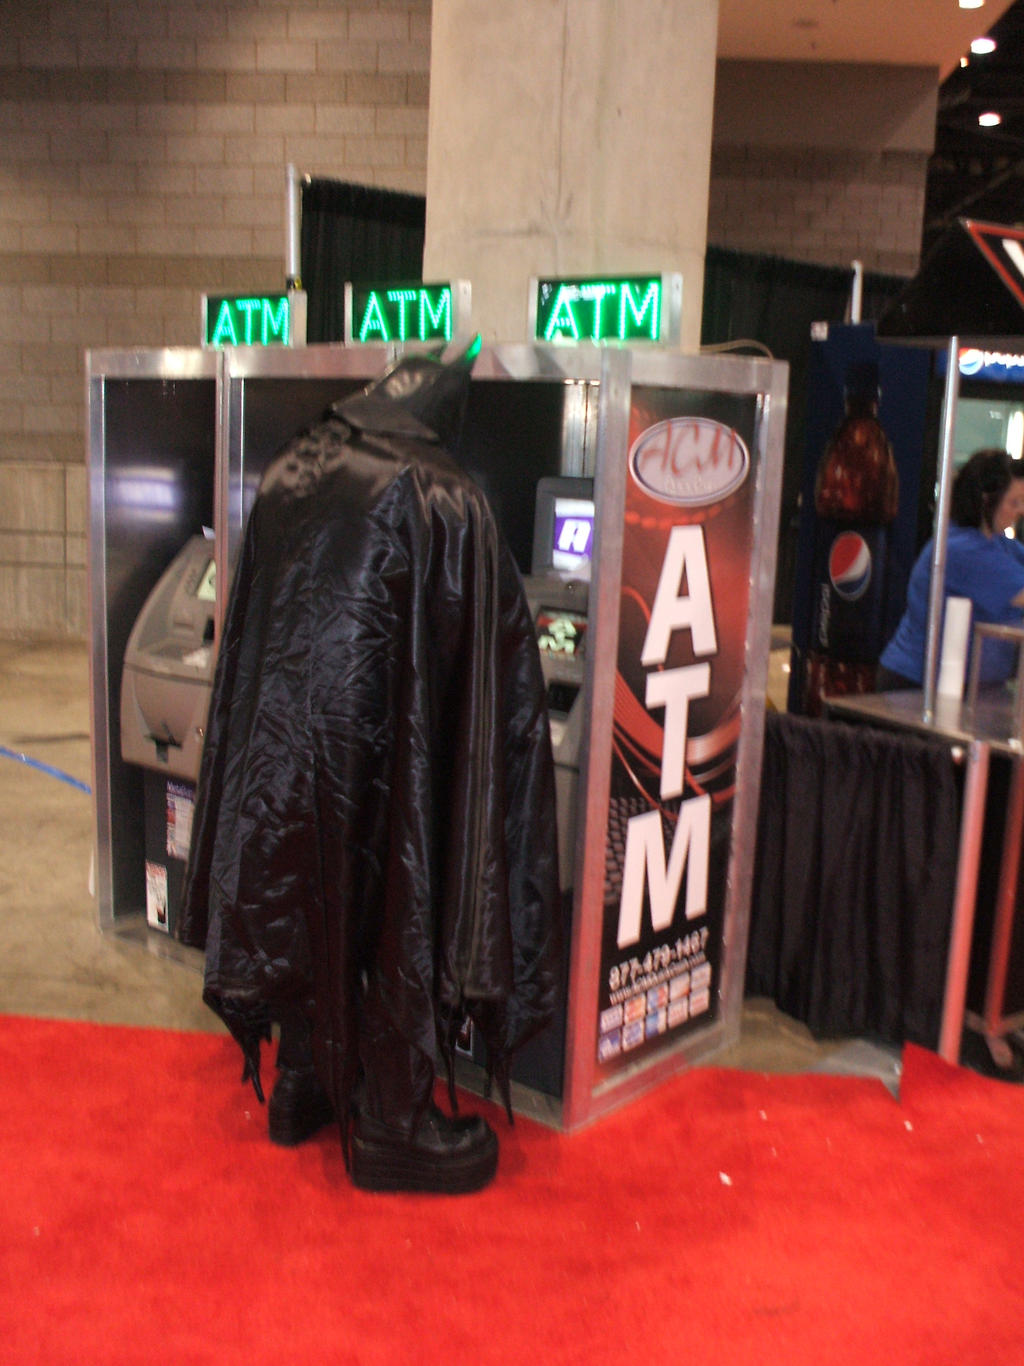 Batman ATM